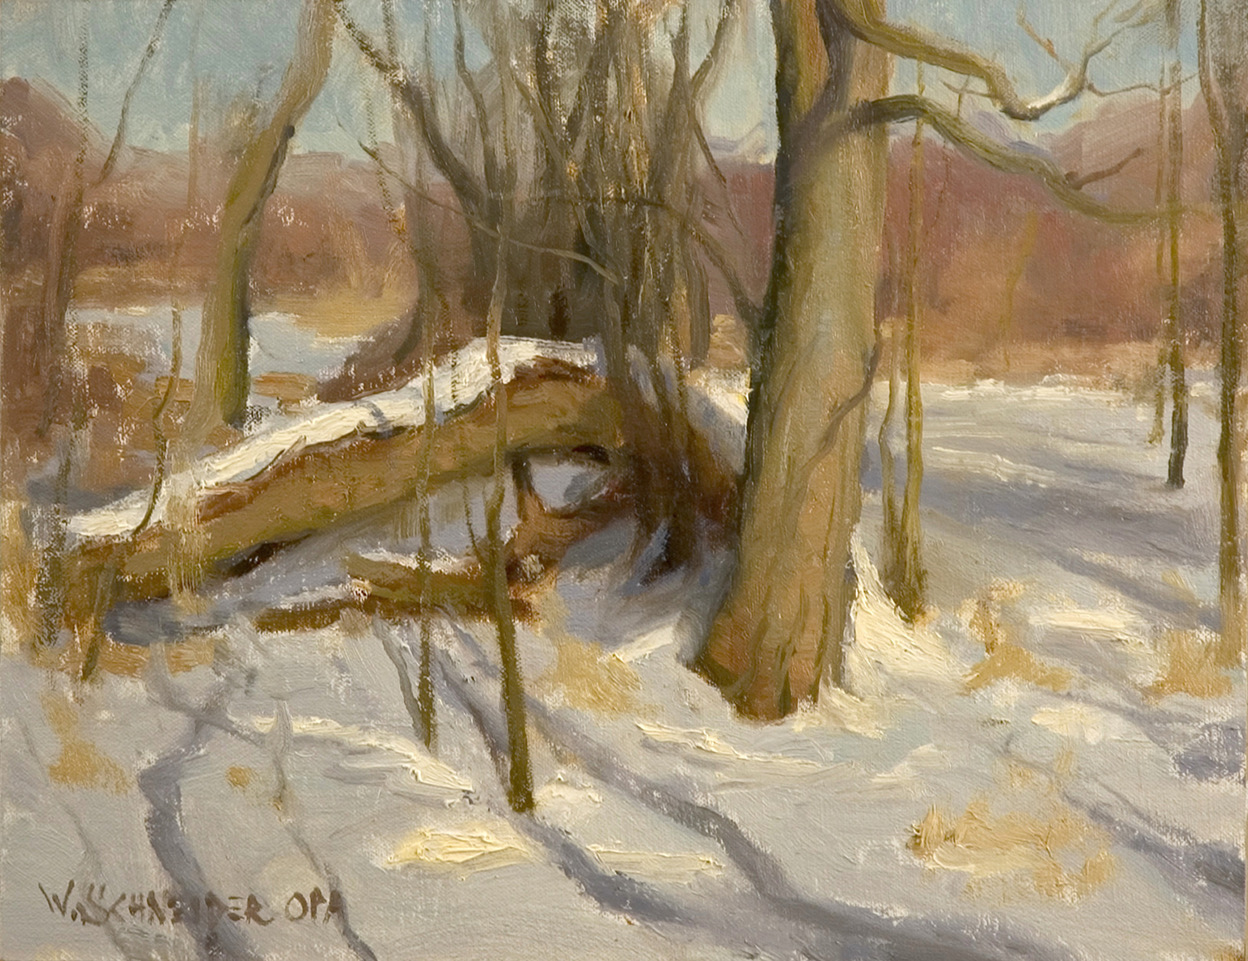 William Schneider, "January Sunshine," 11 x 14 in., plein air